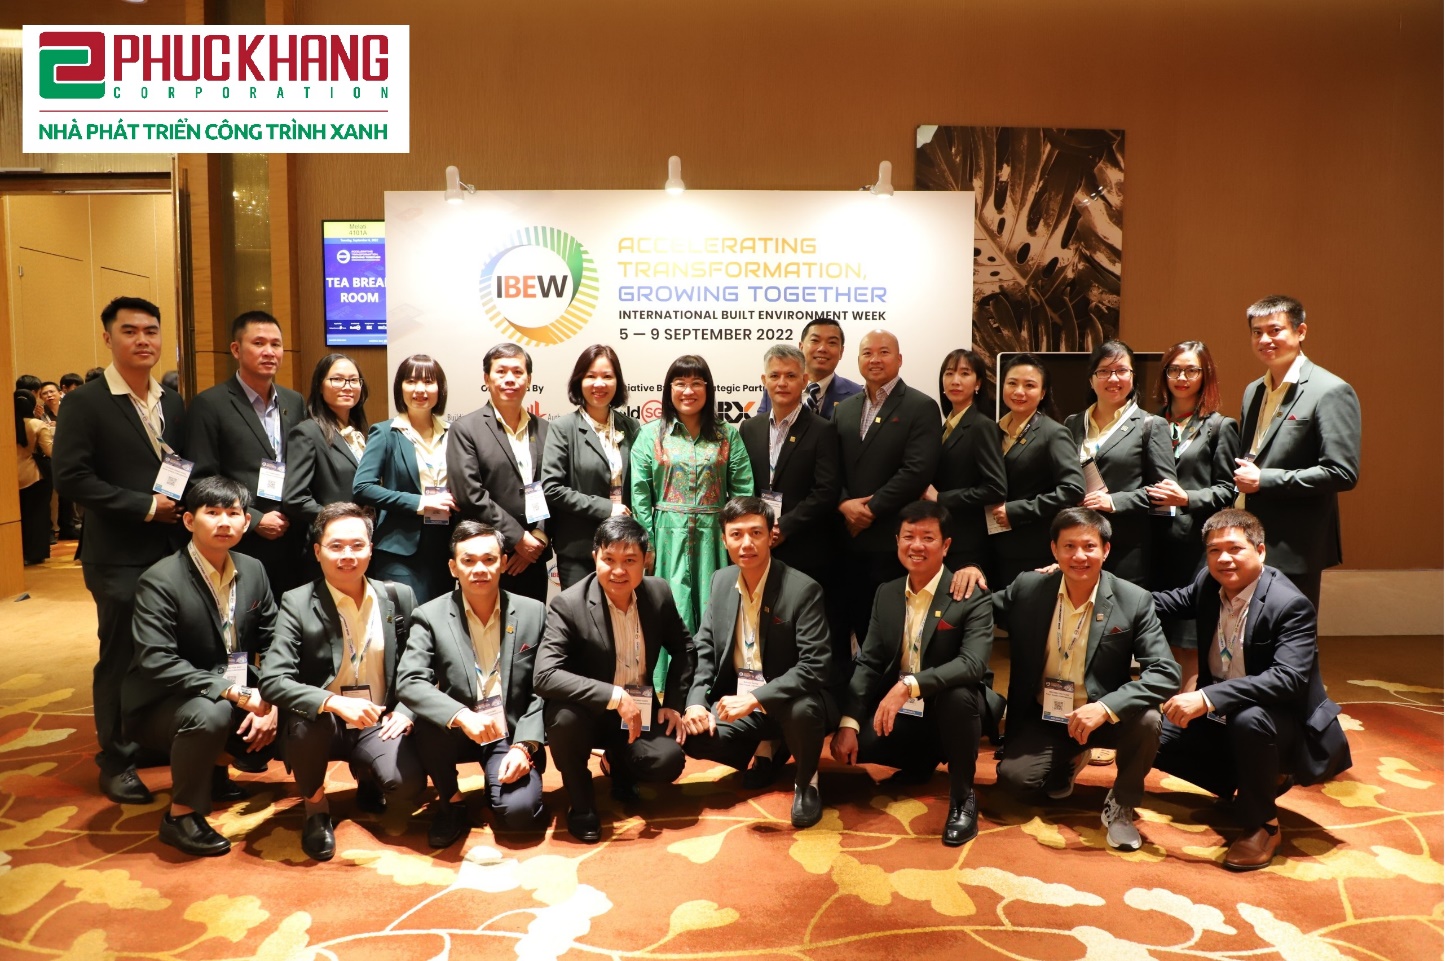 Đoàn Phuc Khang Corporation tham dự IBEW 2022 (Tuần lễ Môi trường Xây dựng Bền vững Quốc tế) tại Sands Expo Convention Center, Singapore - Ảnh: Phuc Khang Corporation